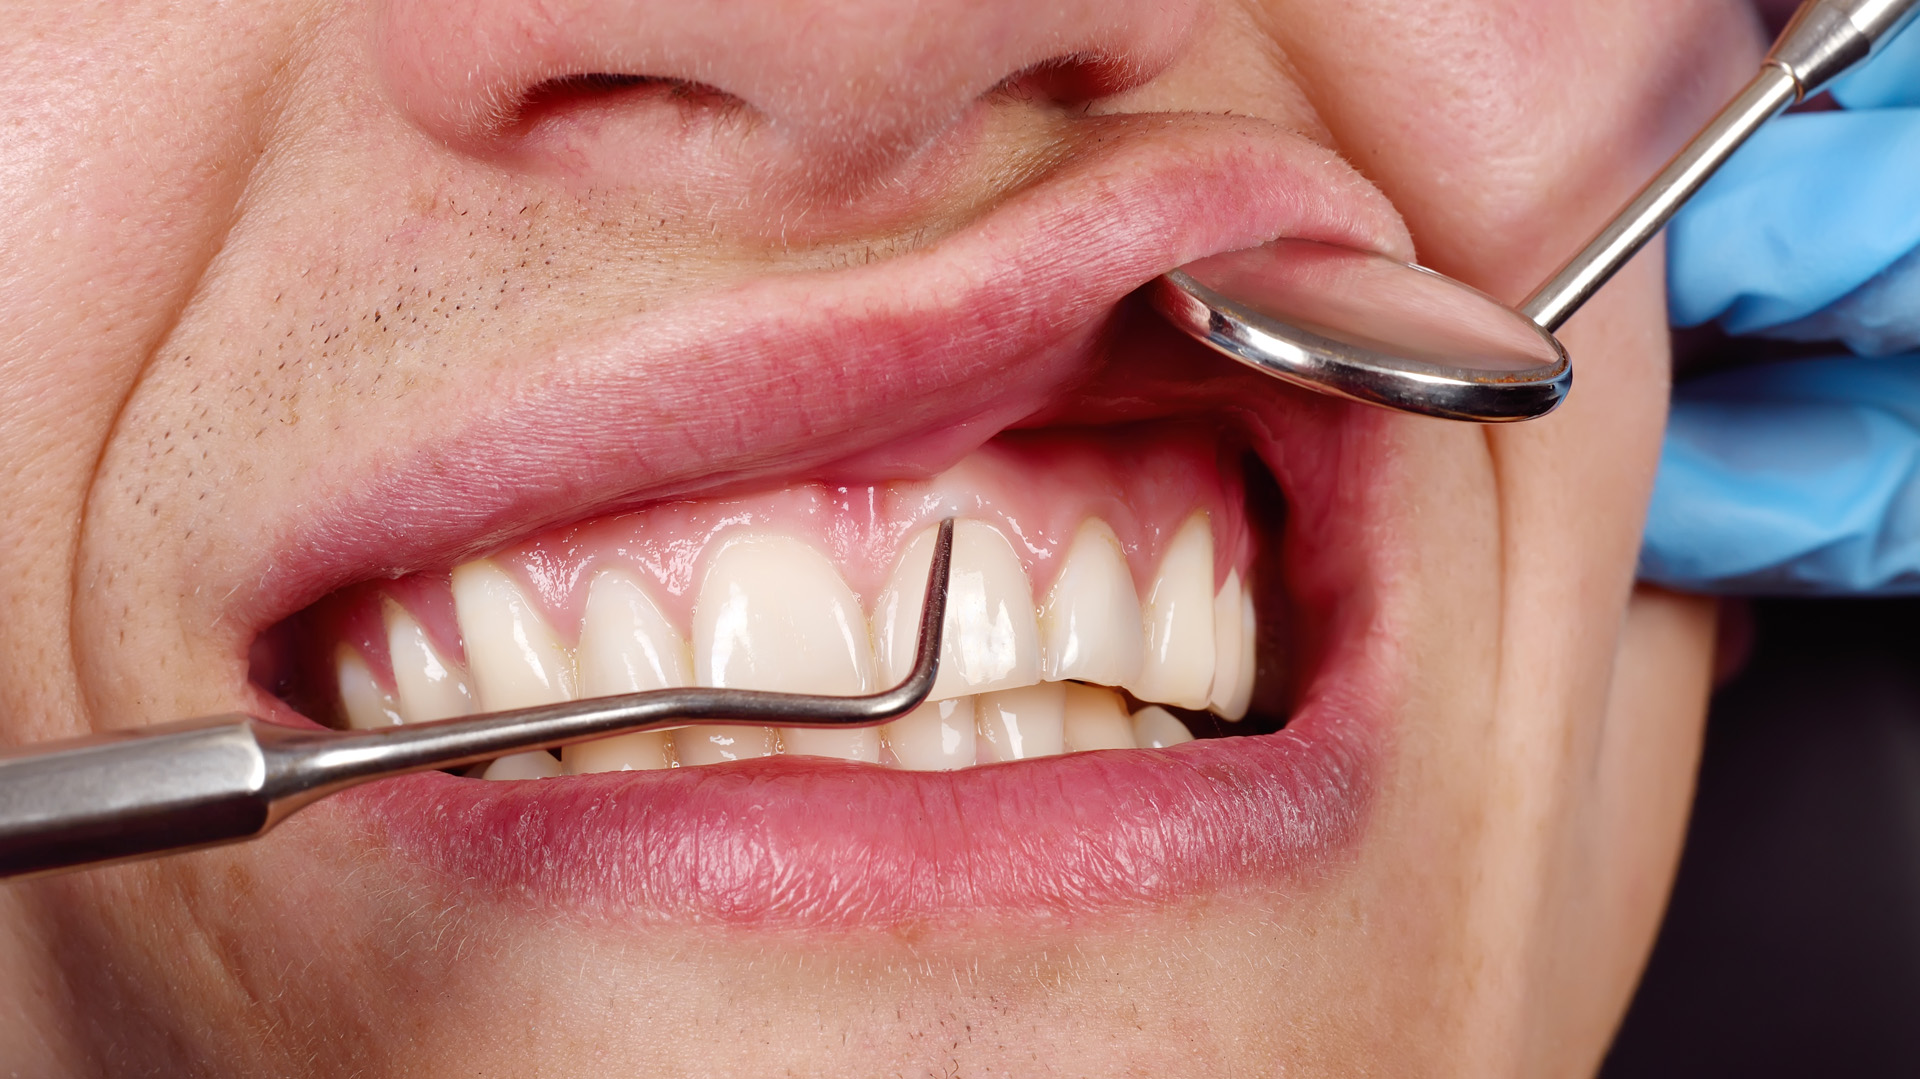 El uso de hilo dental previene problemas en las caries. Uno de ellos puede ser la gingivitis